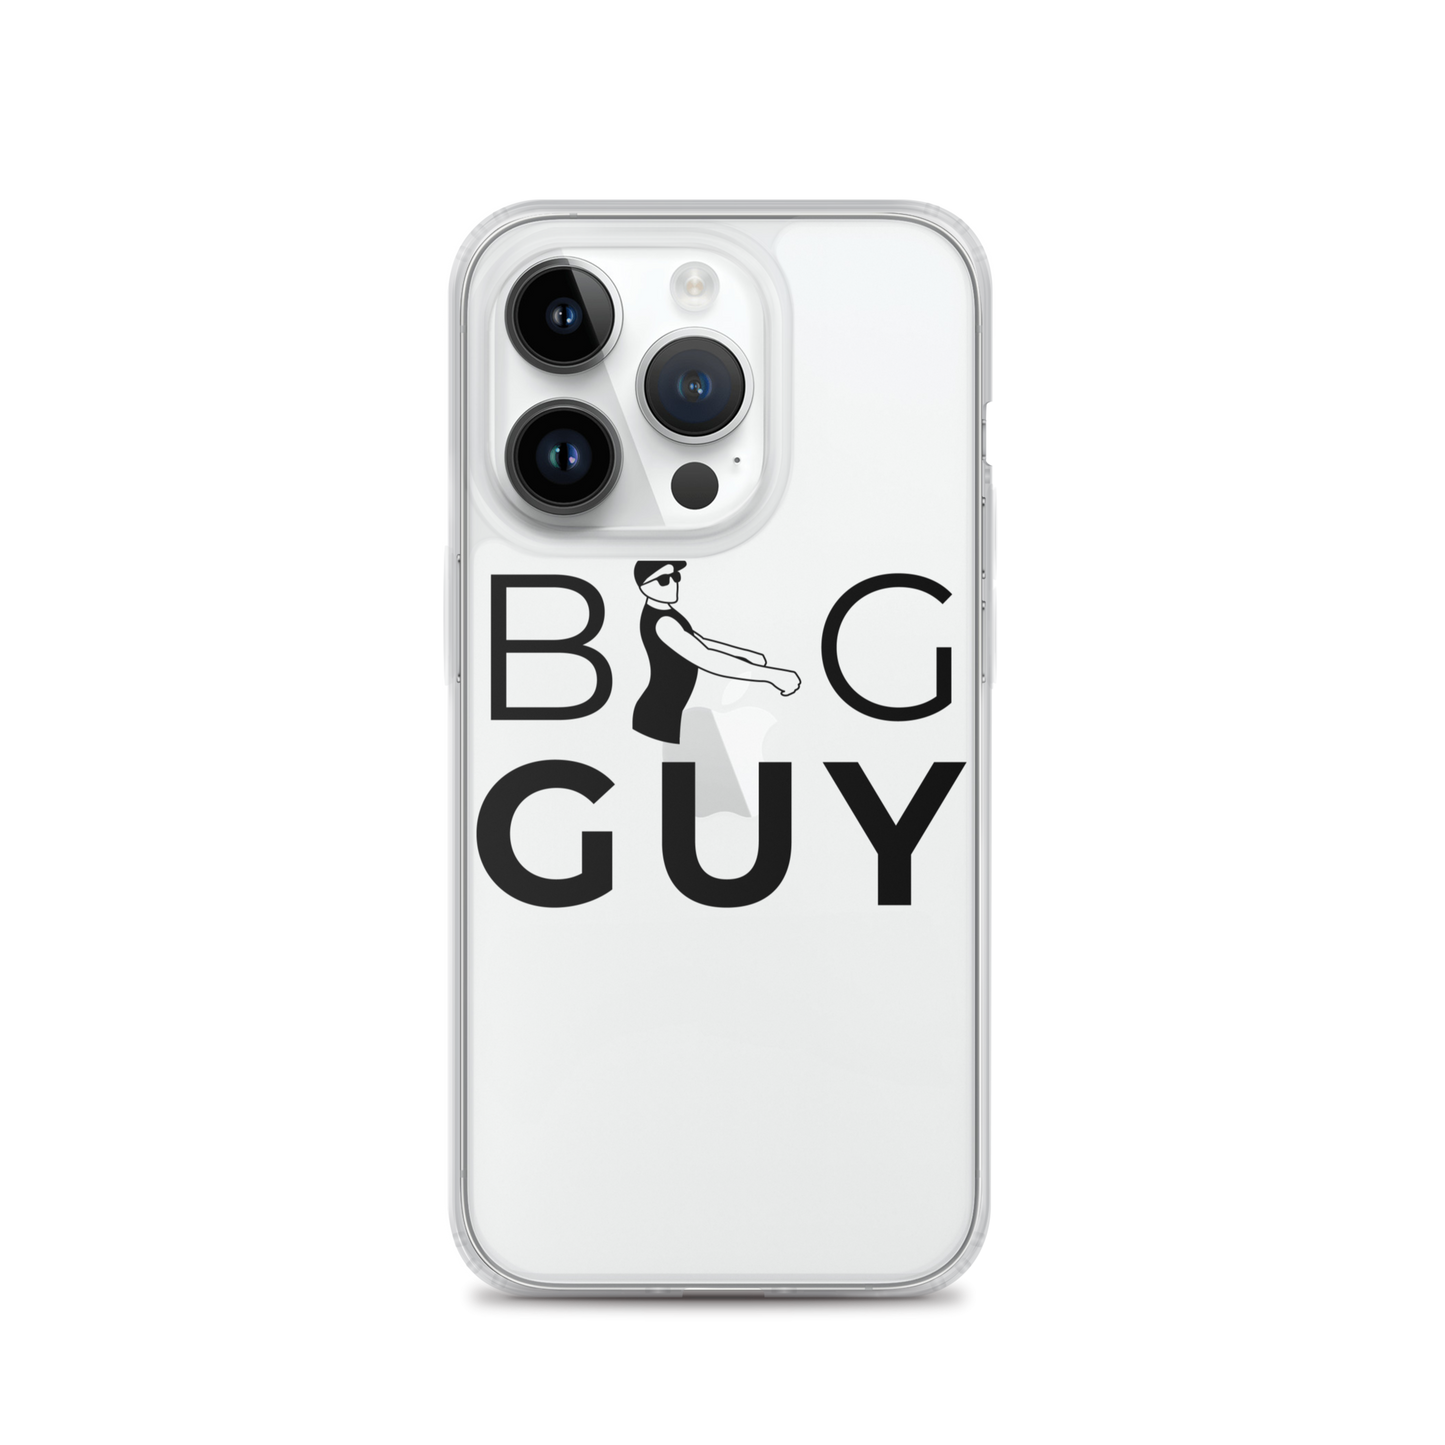 BigGuy iPhone XR Case